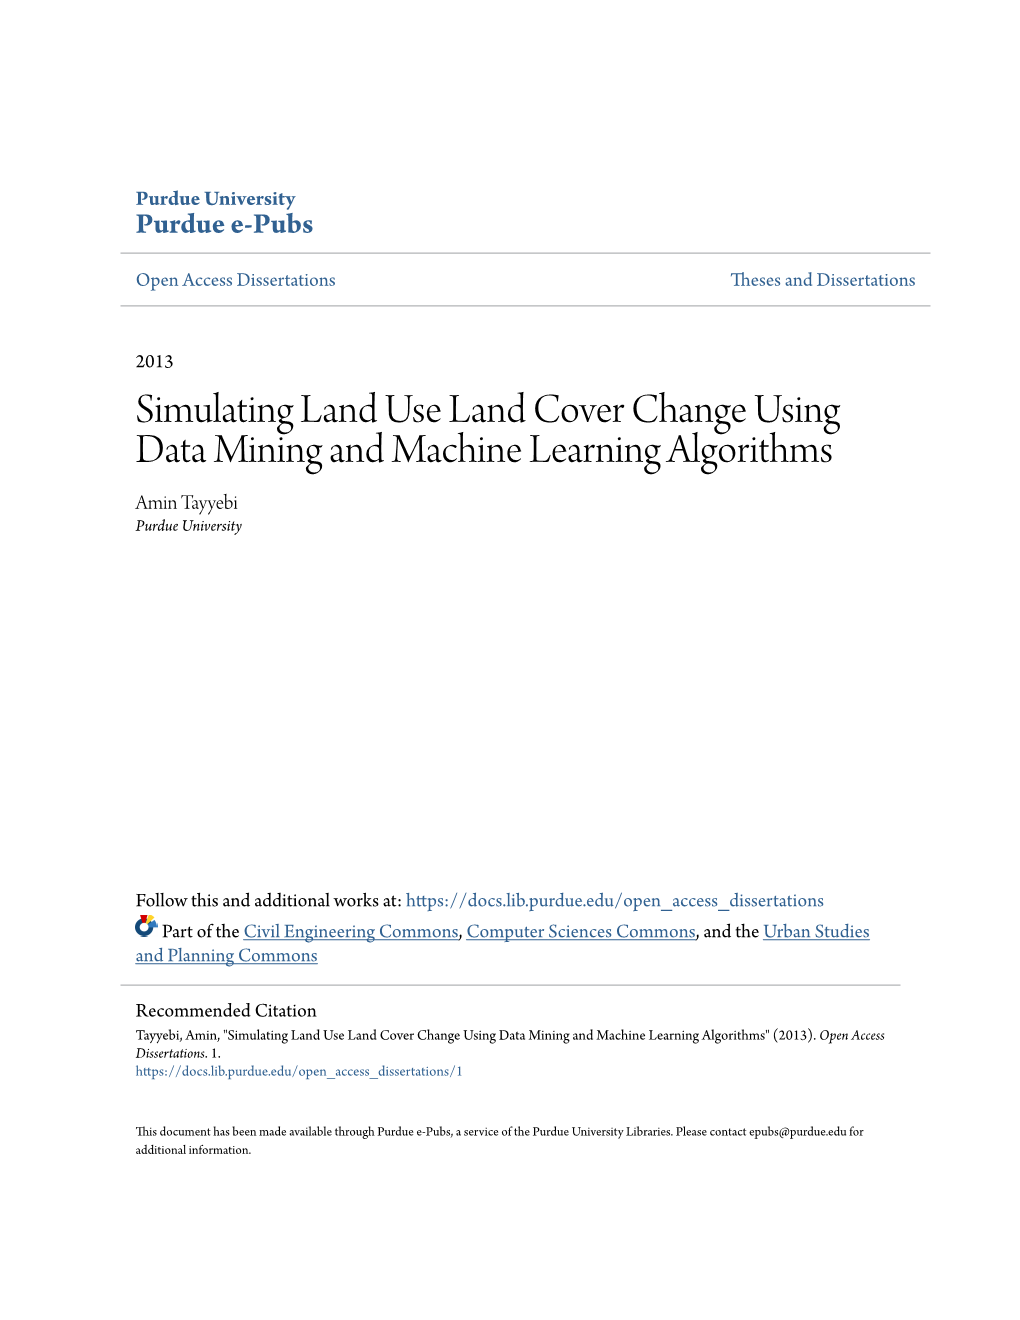 Simulating Land Use Land Cover Change Using Data Mining and Machine Learning Algorithms Amin Tayyebi Purdue University